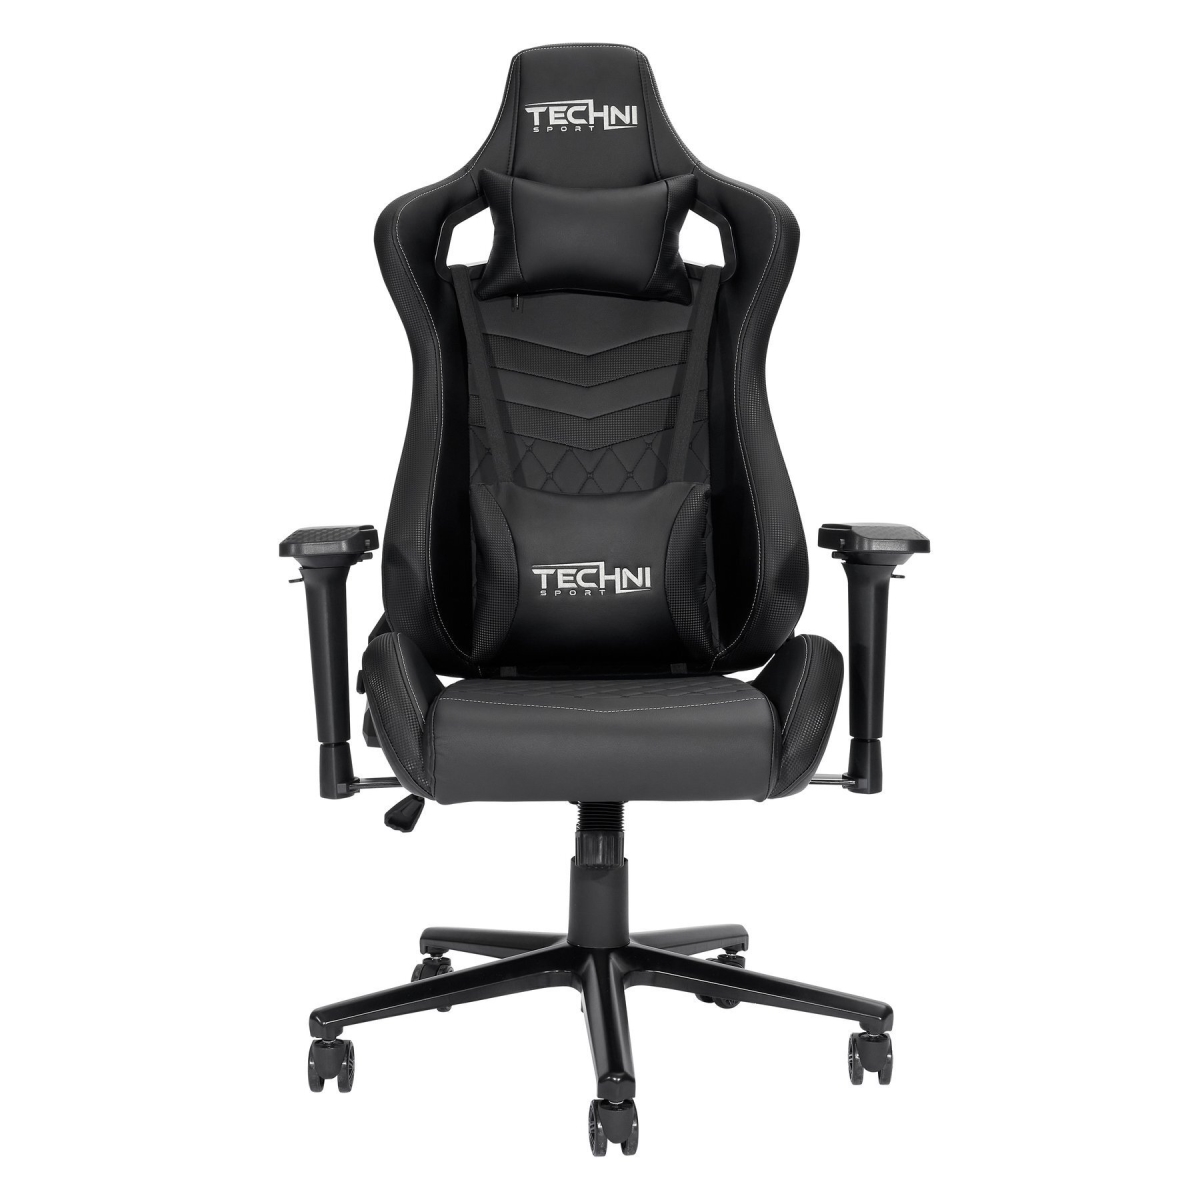 Rta-ts83-bk Ts-83 Ergonomic High Back Racer Style Pc Gaming Chair, Black